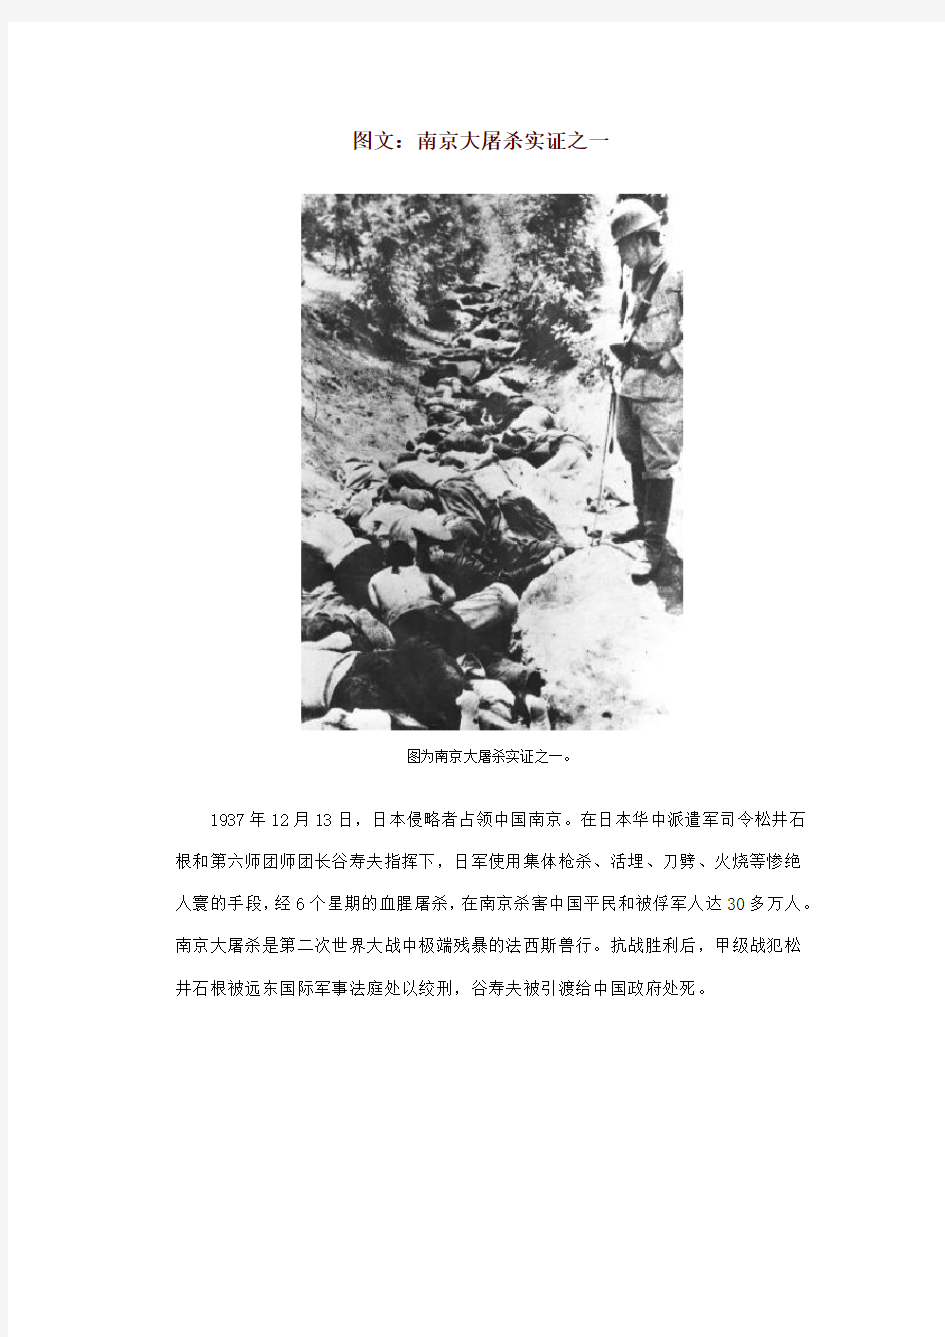 南京大屠杀资料